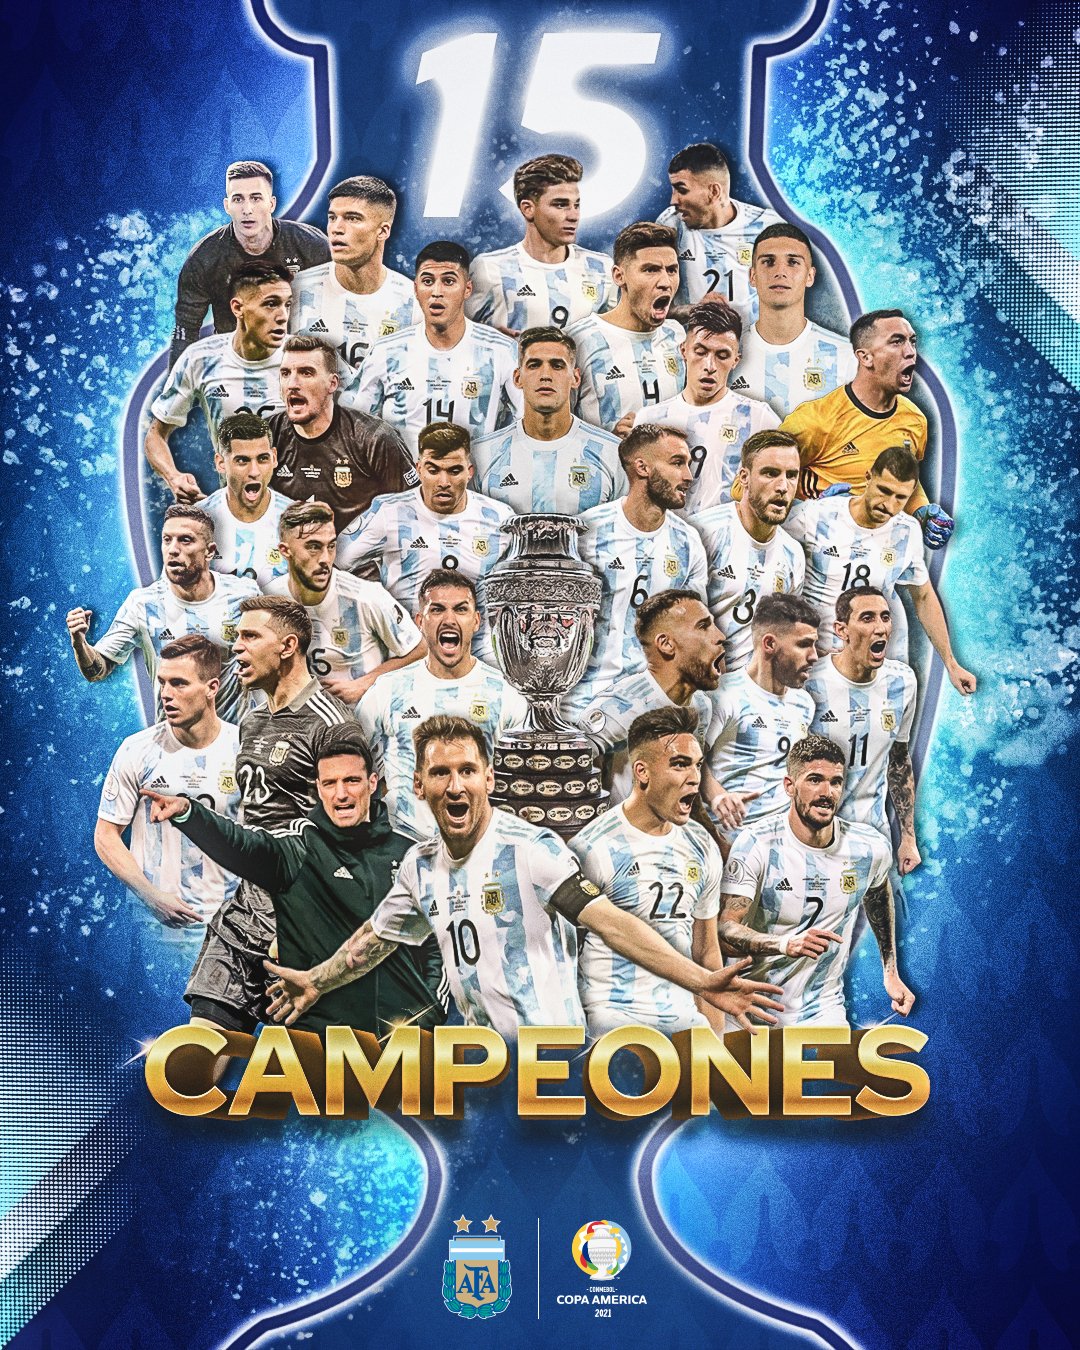 阿根廷国家队在官方社交媒体账号上发布的夺冠海报。